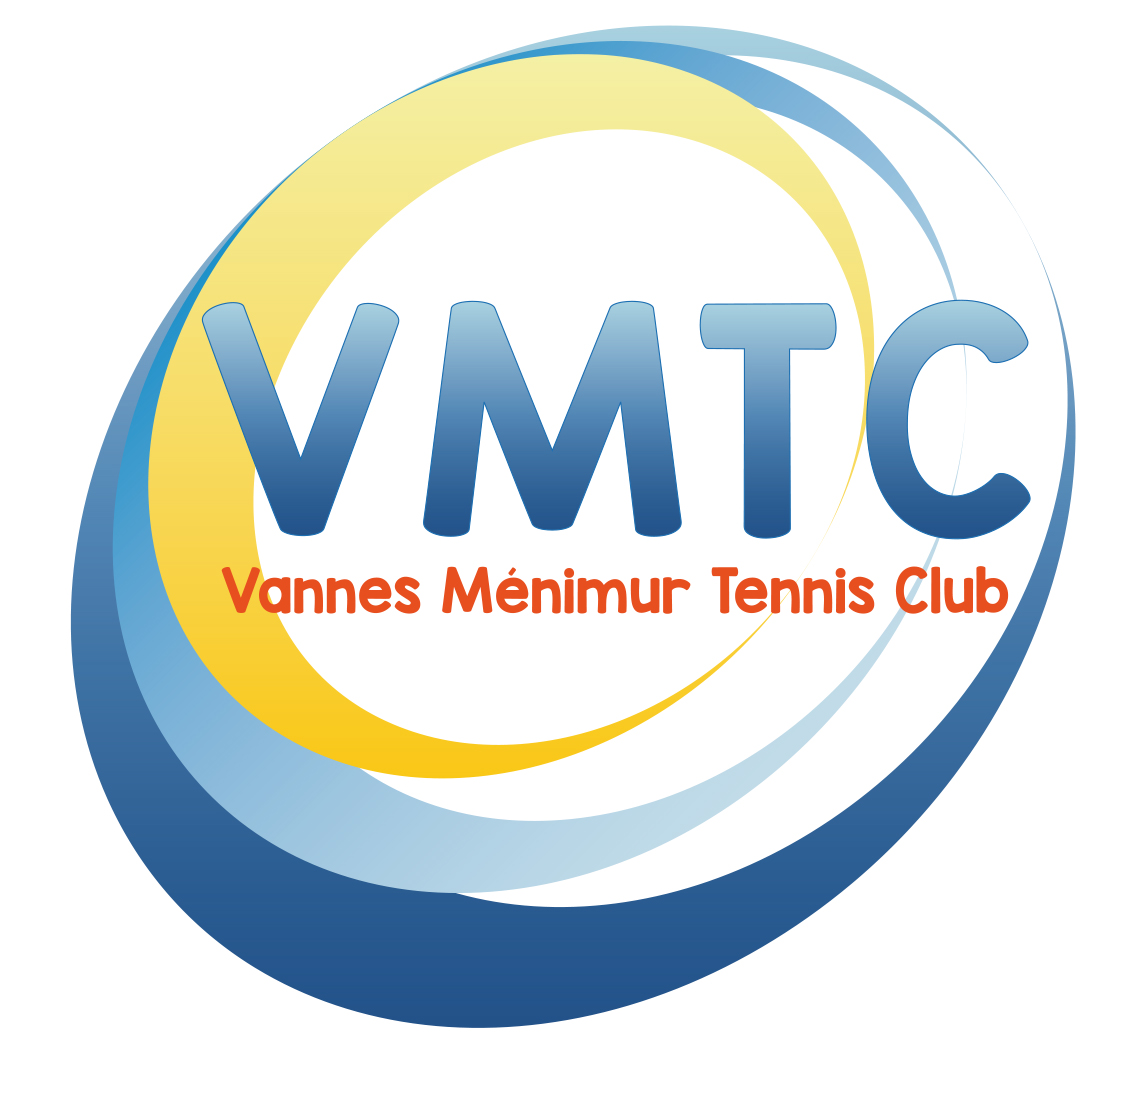 Vannes Ménimur Tennis Club